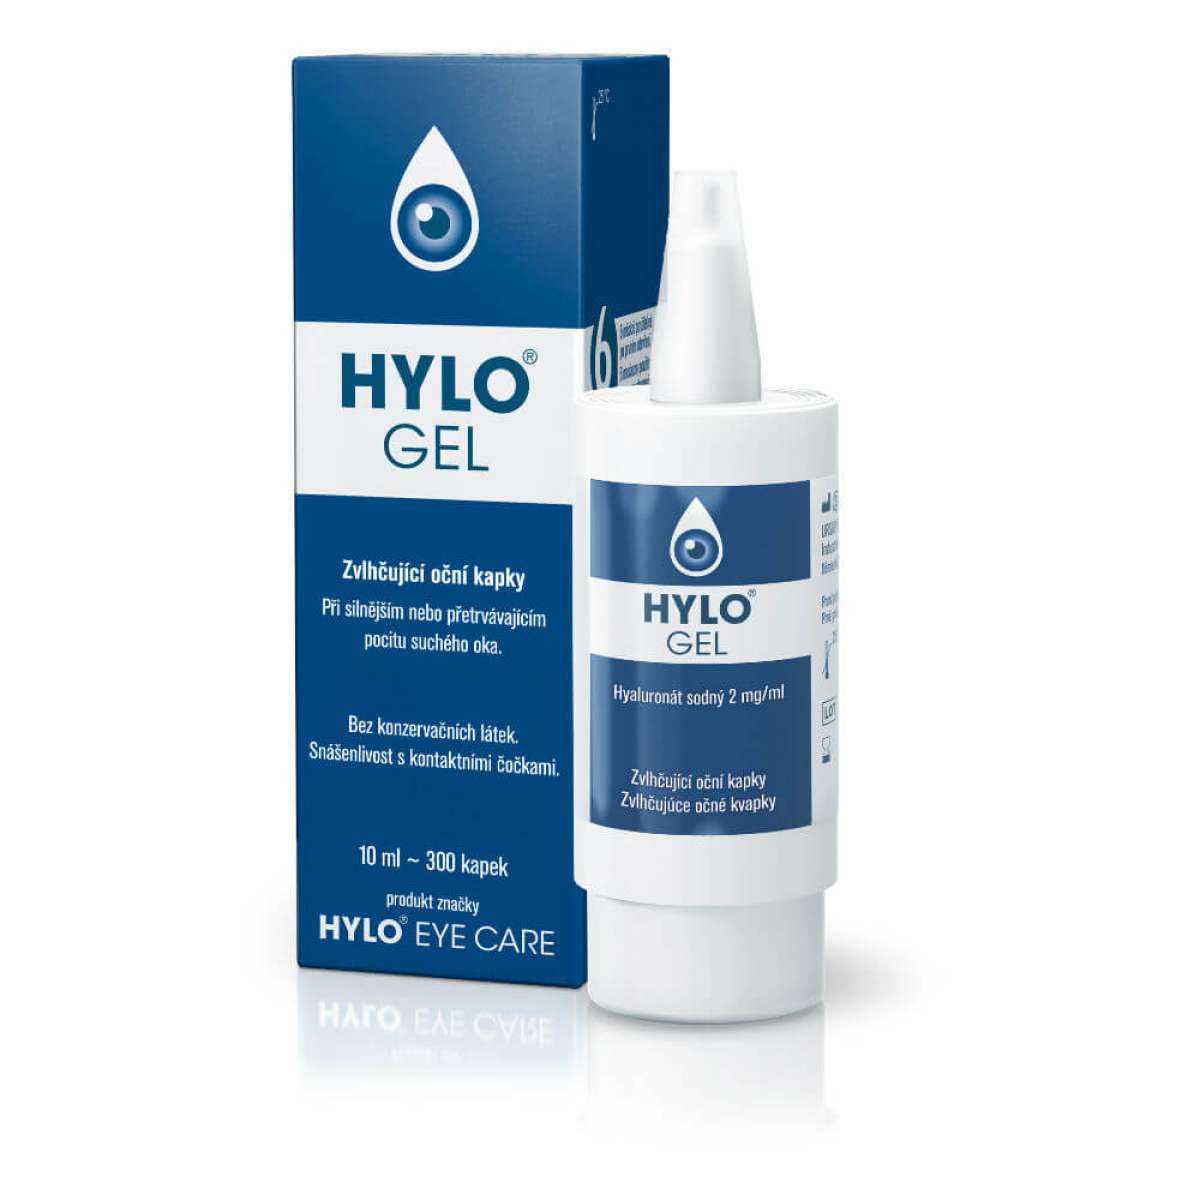 Hylo-Dual Eye Drop 10 ml